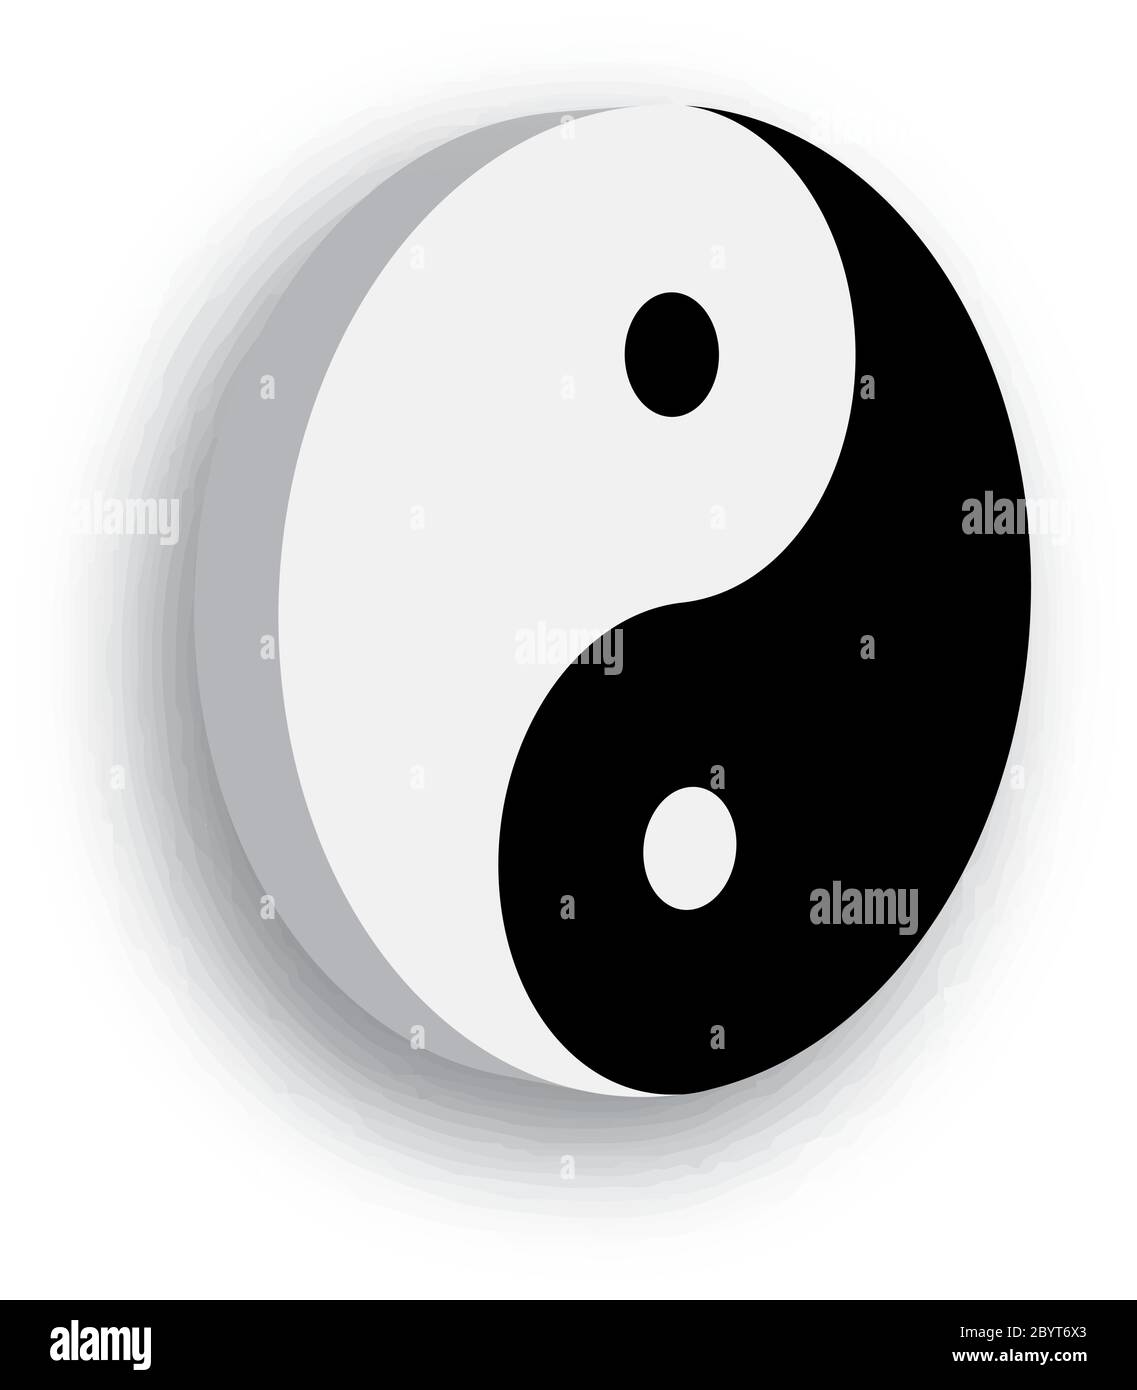 Le symbole Yin Yang, icône de la phylosophie chinoise, décrit comment les forces opposées et contraires peuvent être complémentaires, interconnectées et interdépendantes dans le monde naturel. Illustration noir et blanc avec ombre. Illustration de Vecteur